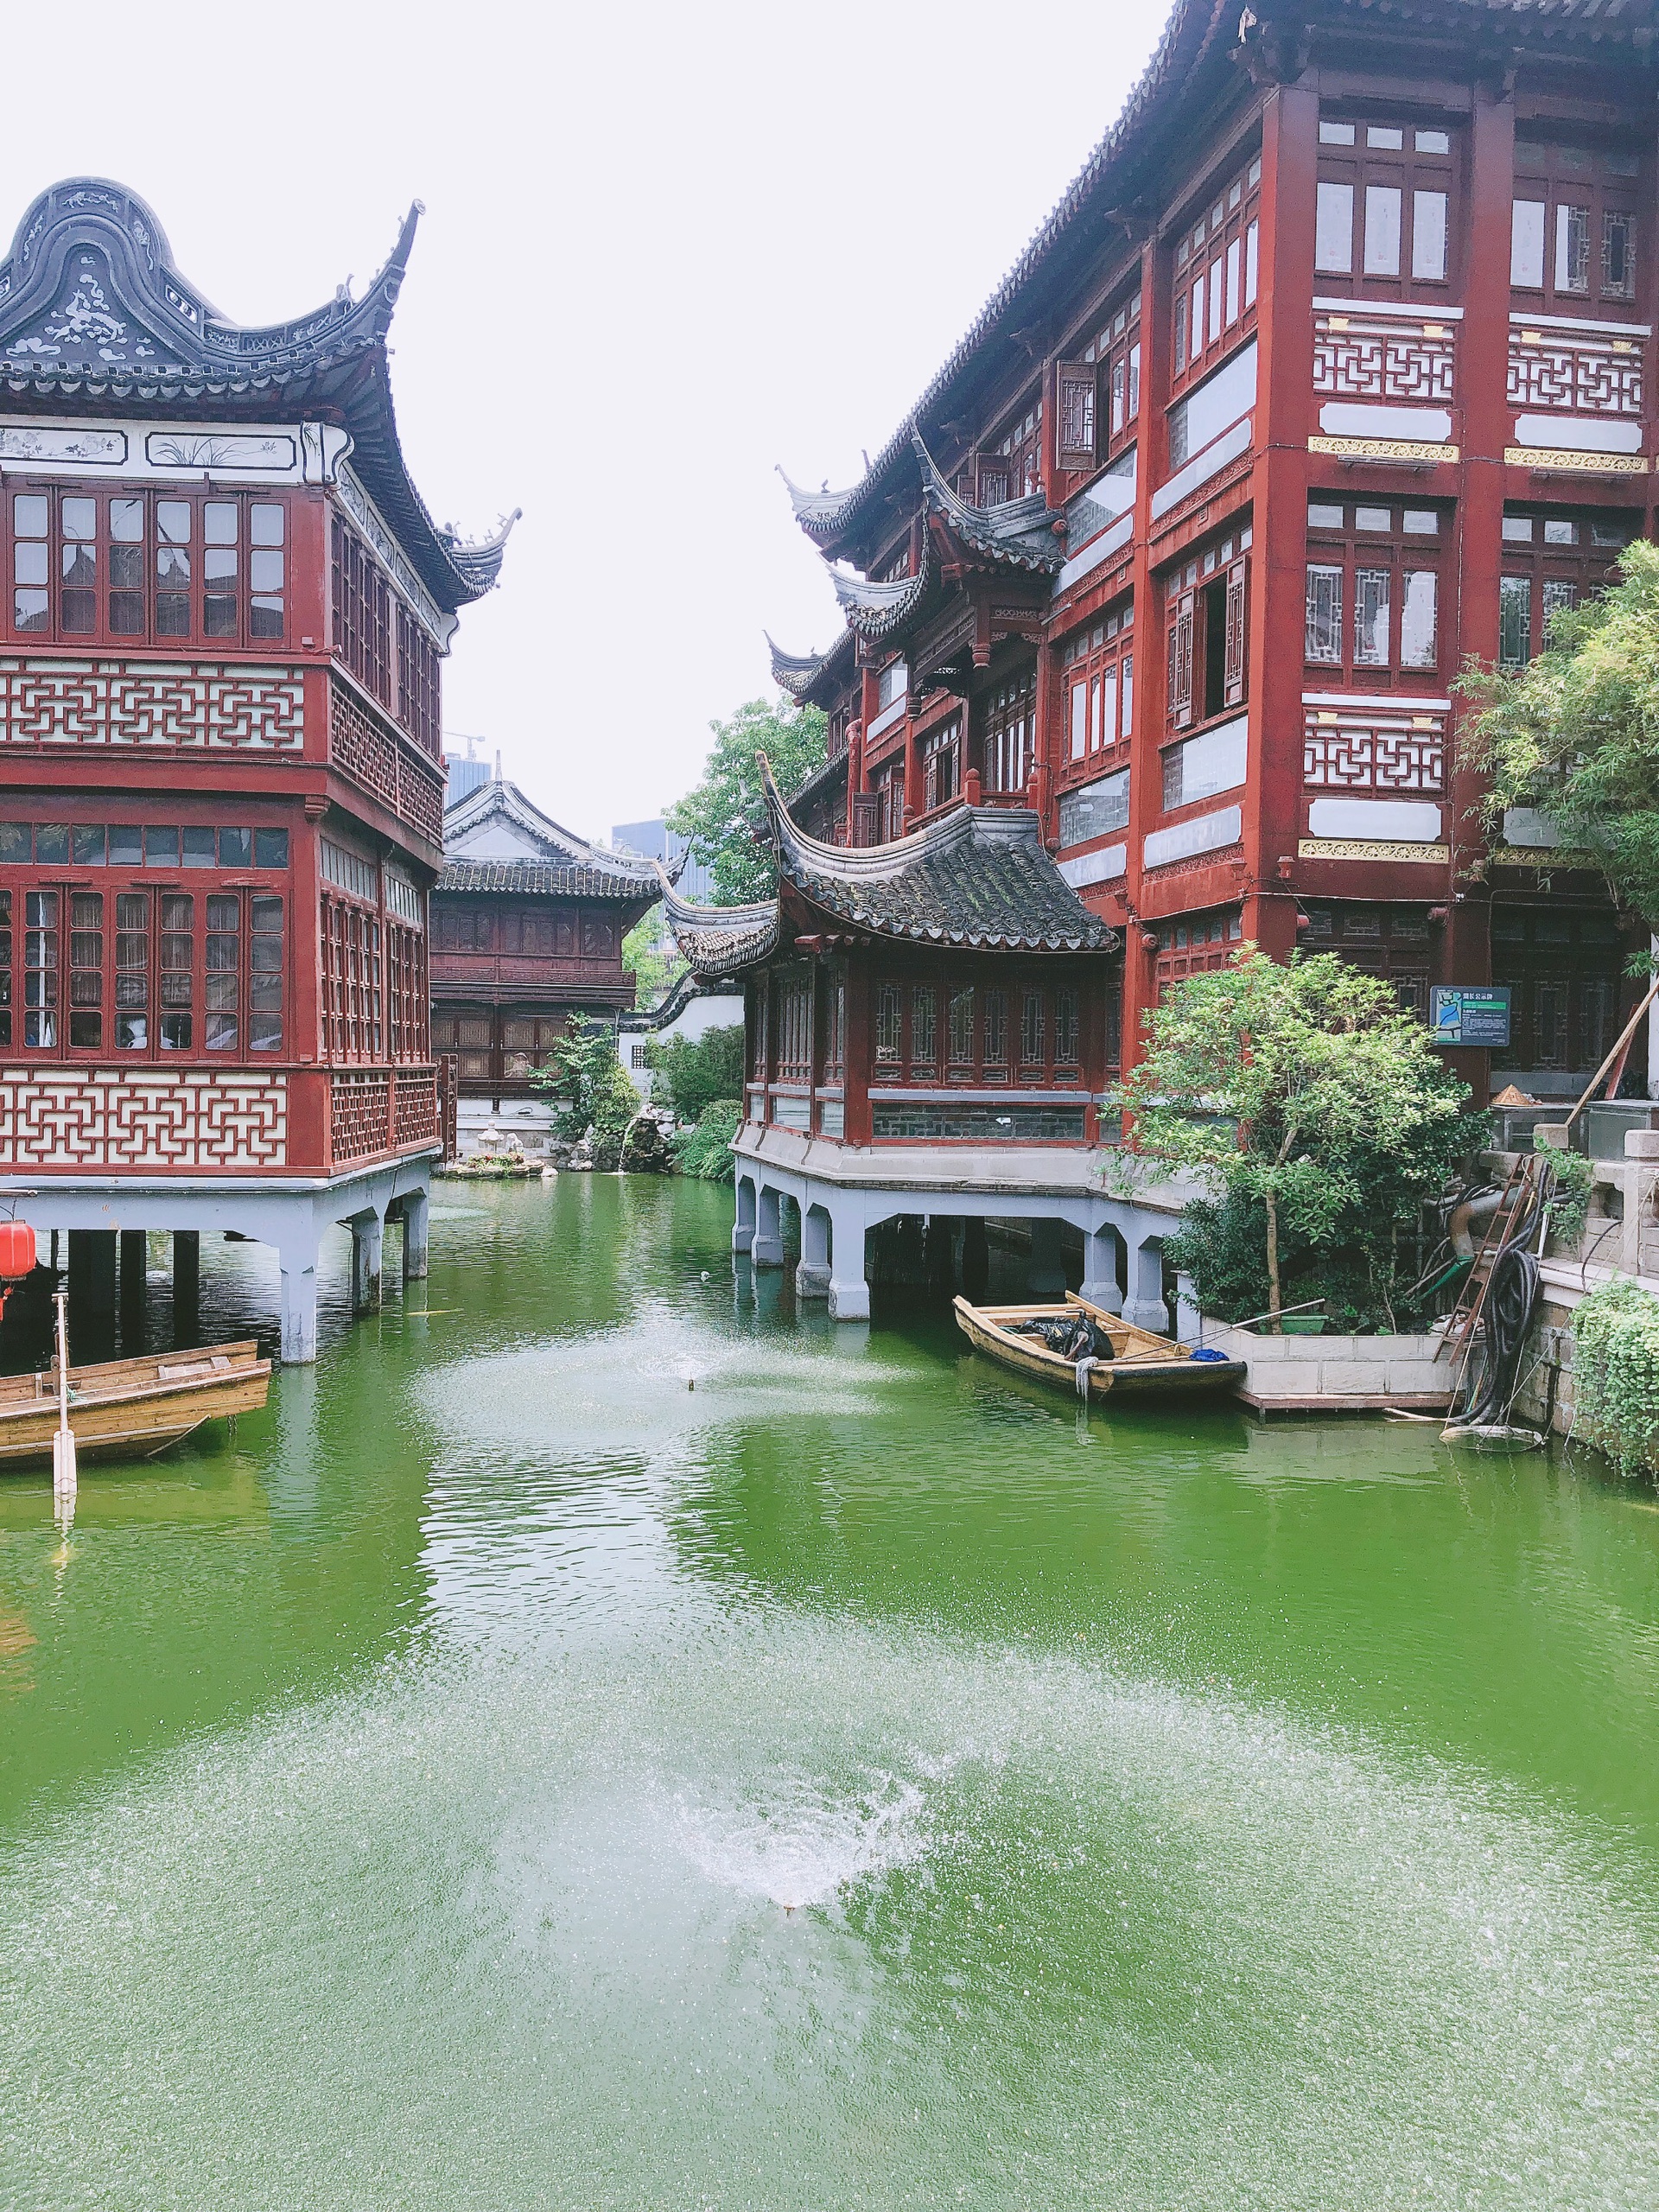 ShangHai YuYuan Garden